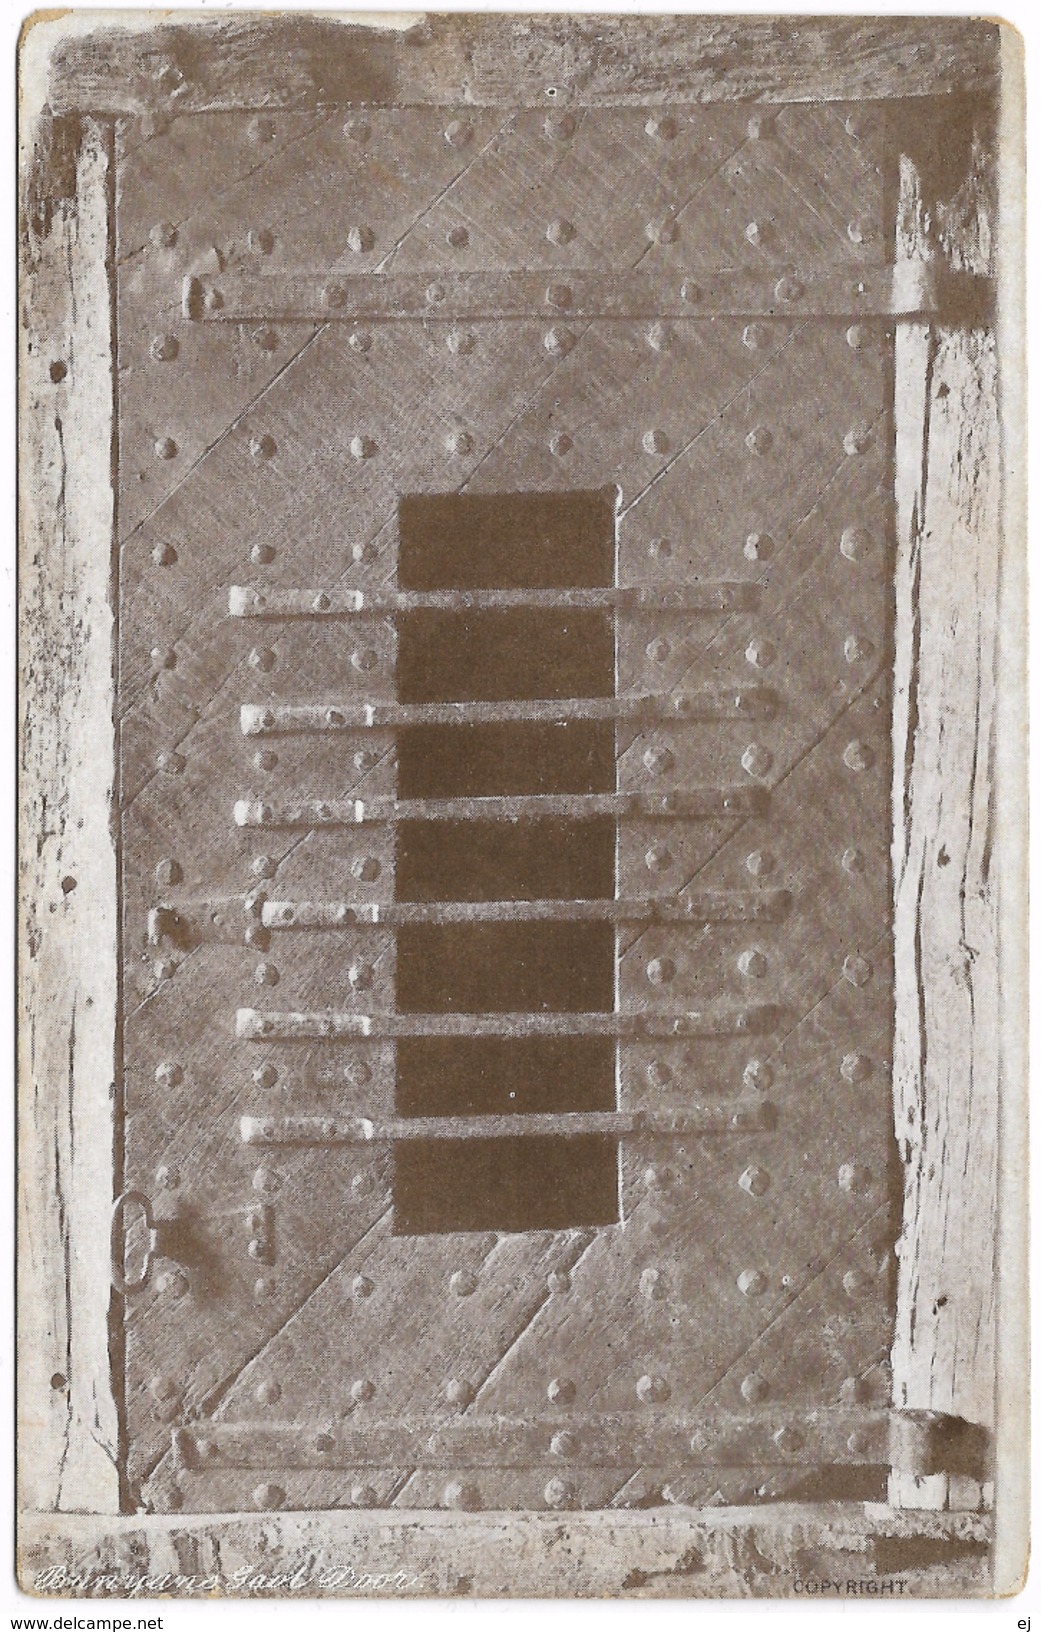 Bunyan's Prison Door - Unused C1918 - Elsford Series - Bedford